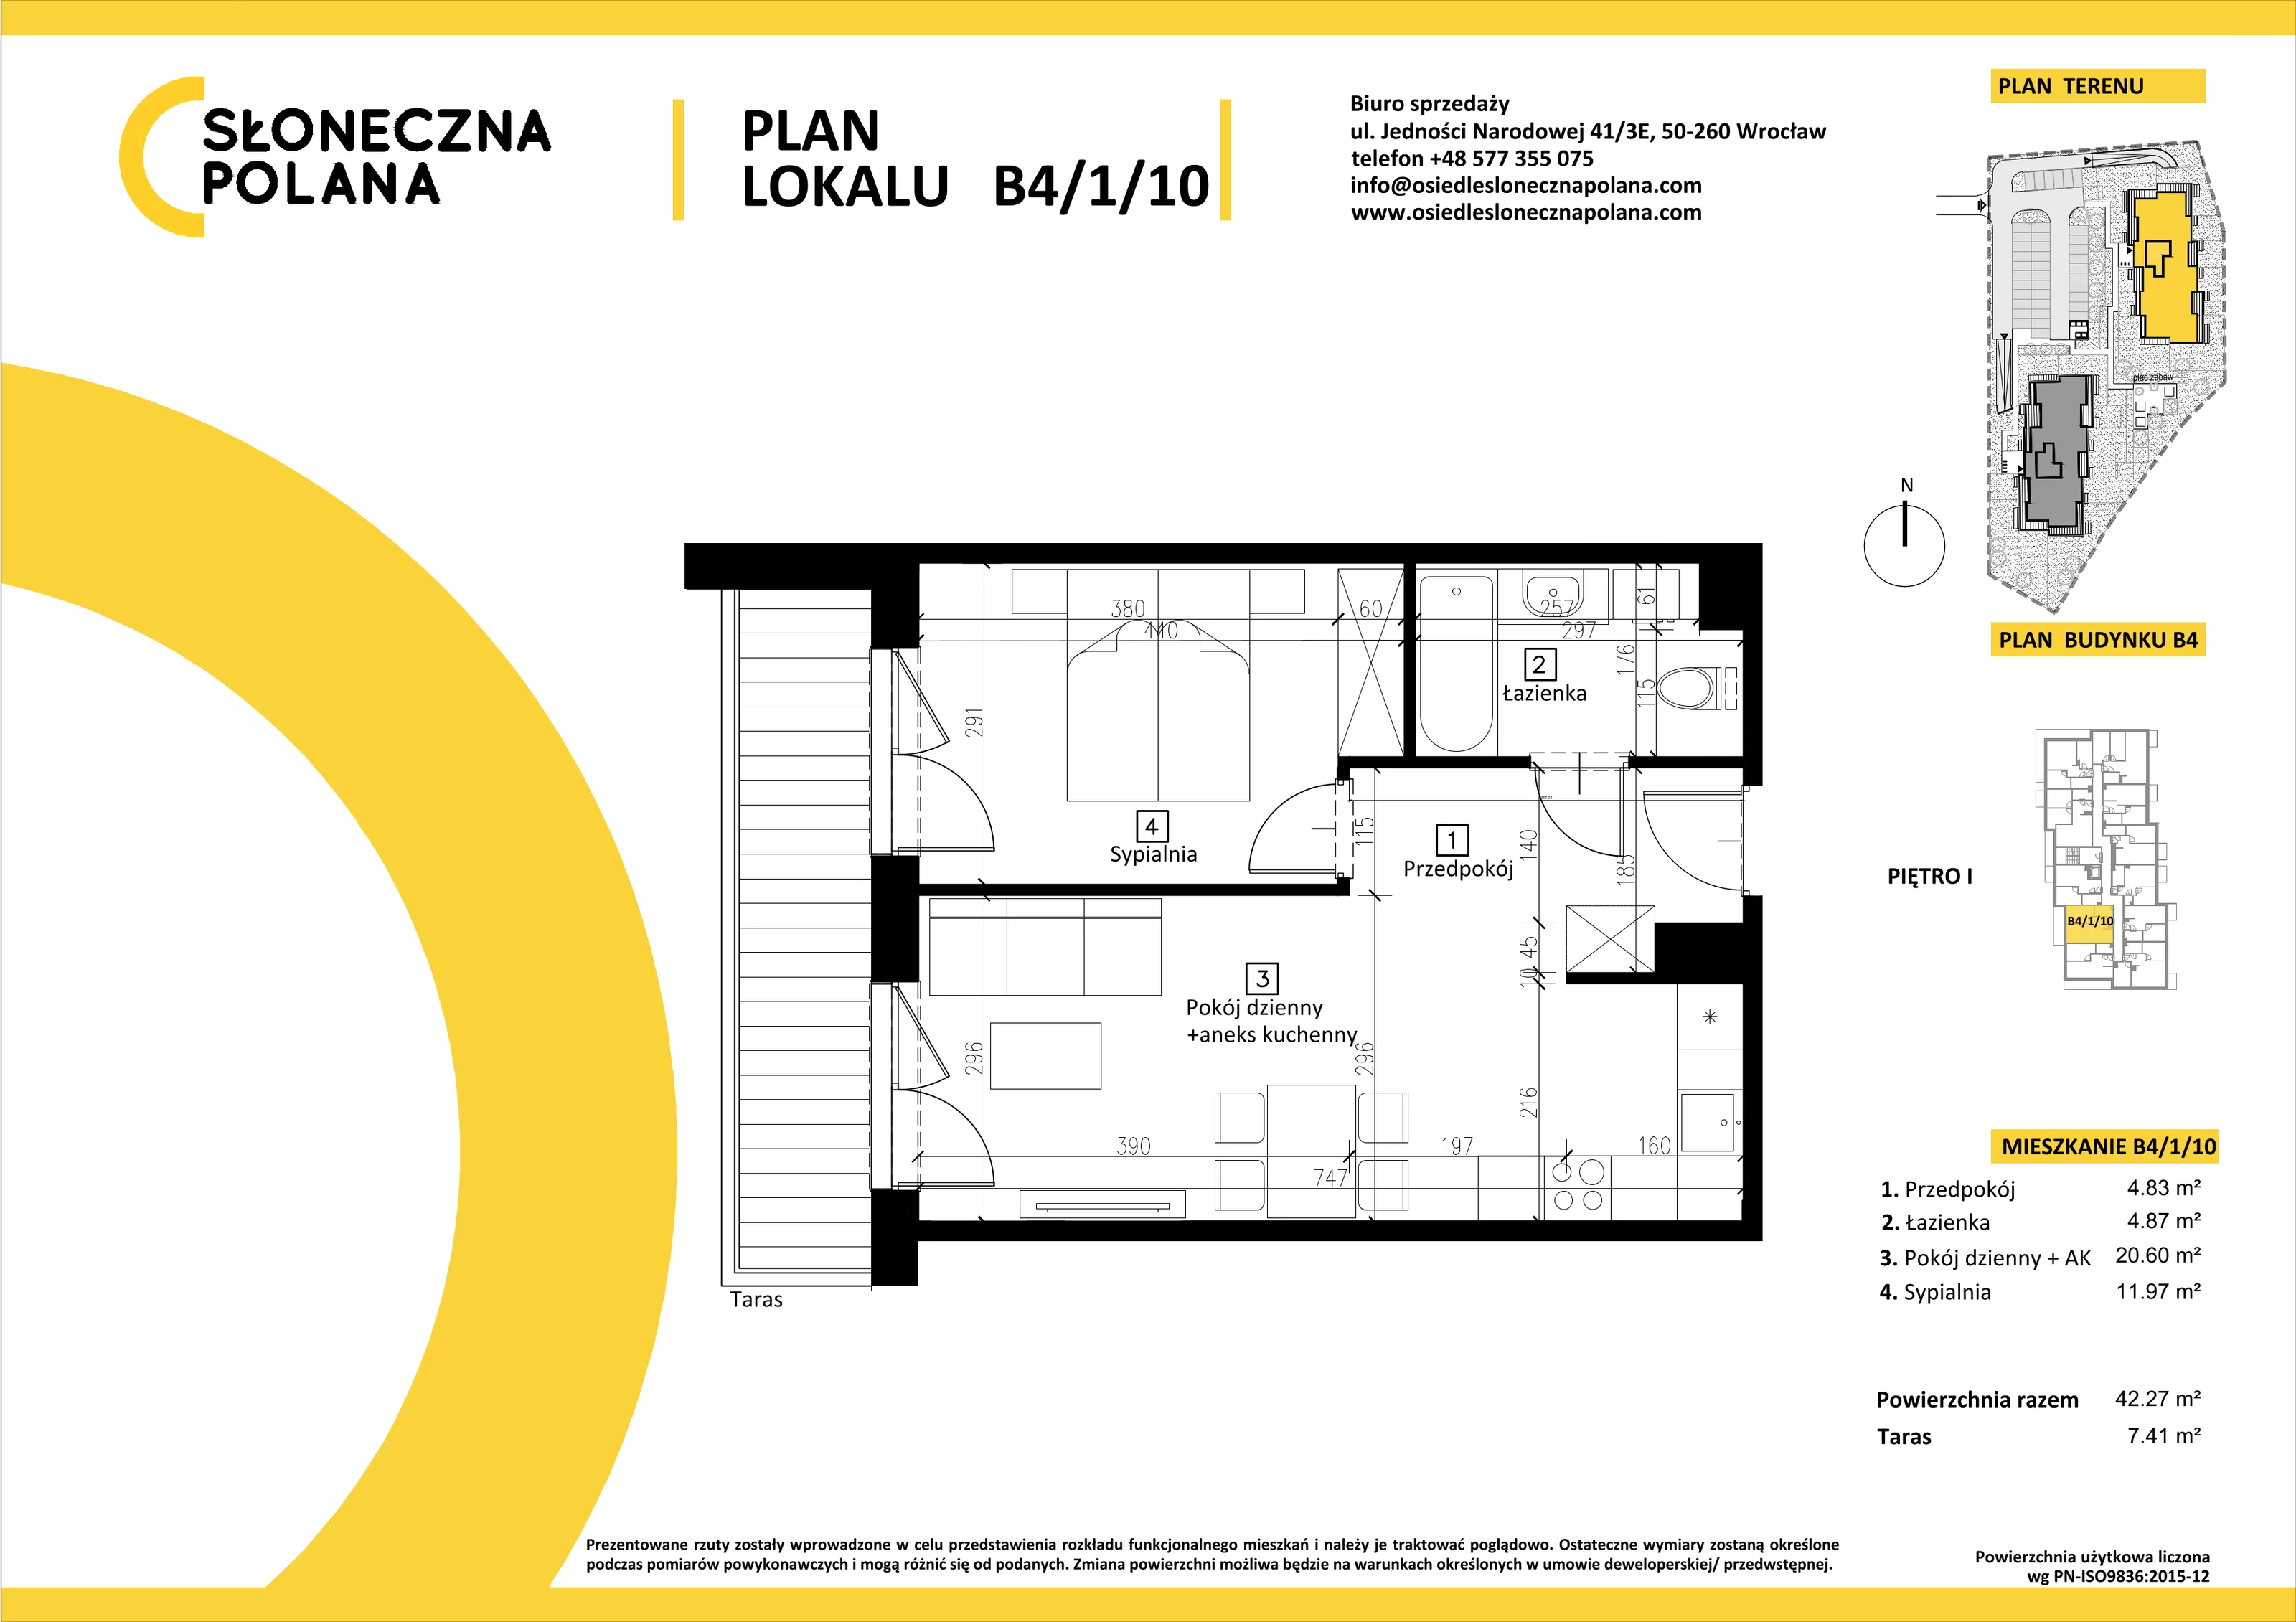 Mieszkanie 42,27 m², piętro 1, oferta nr B4/1/10, Słoneczna Polana, Kudowa-Zdrój, ul. Bluszczowa